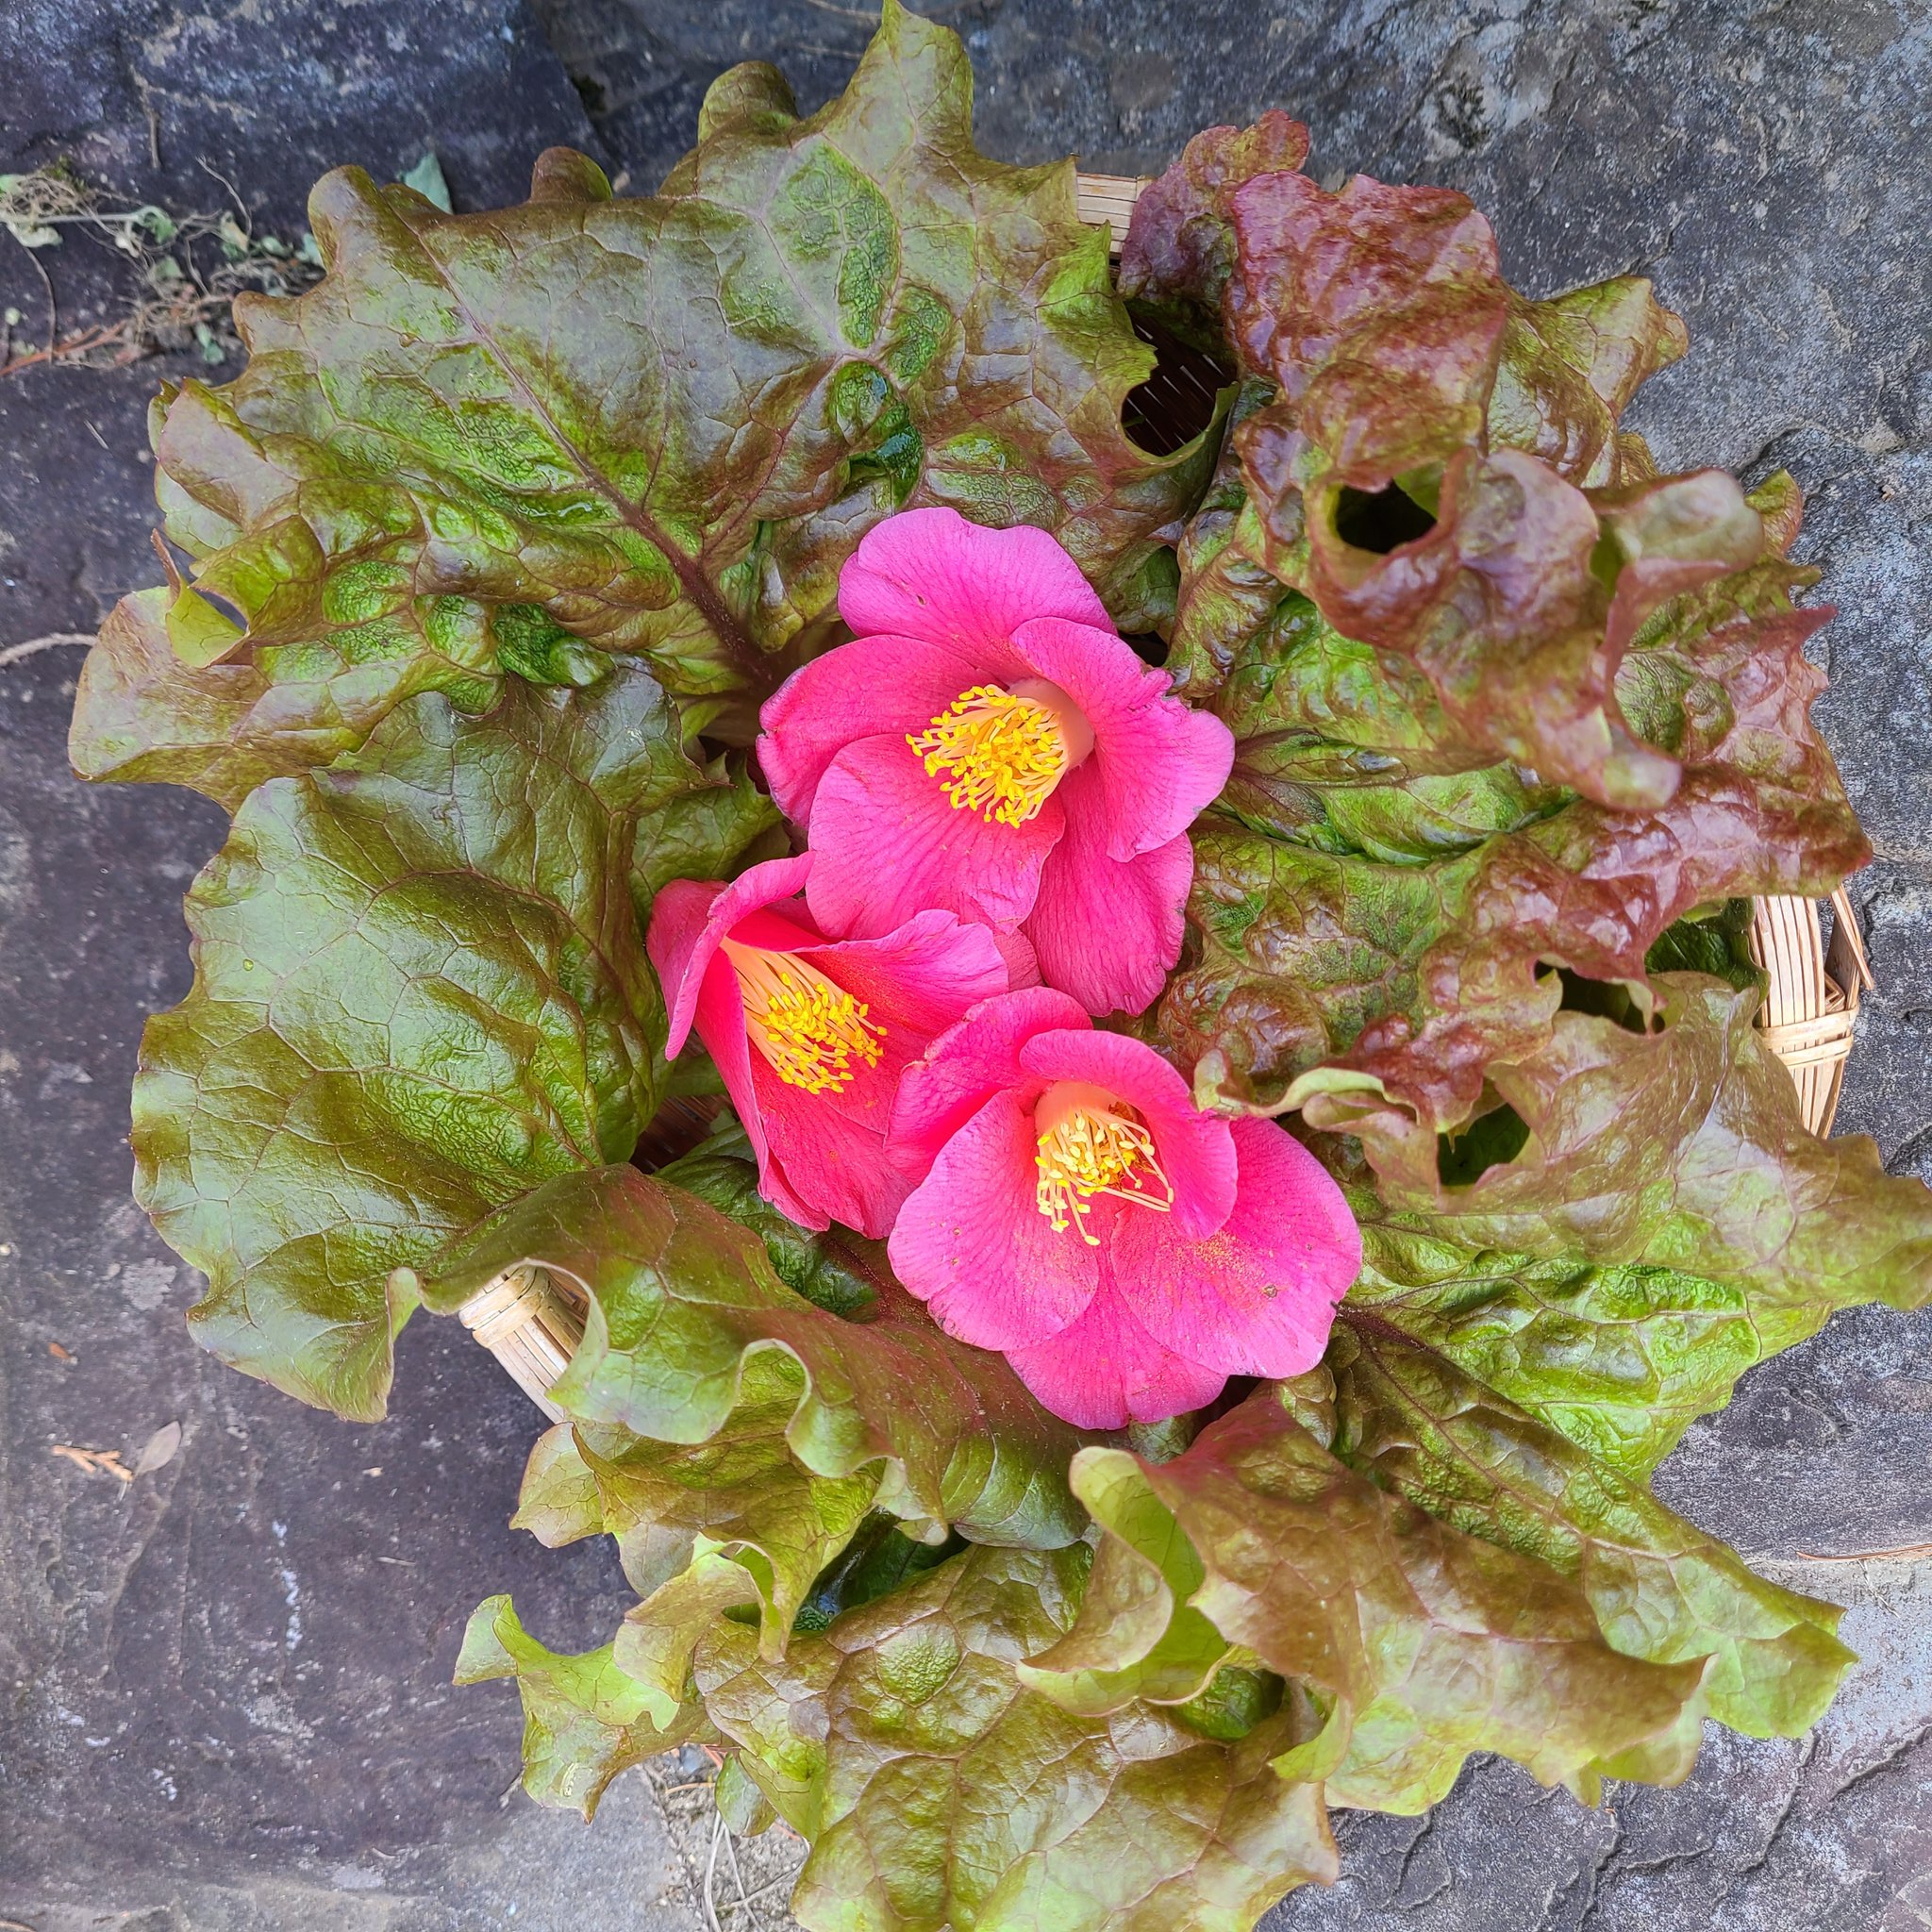 信州発 家庭菜園 Q S Natural Garden もうすぐ椿の花も終了 毎朝採れるレタスと一緒に リーフレタス レッドチャーミング T Co A1xk6tnnpx Twitter